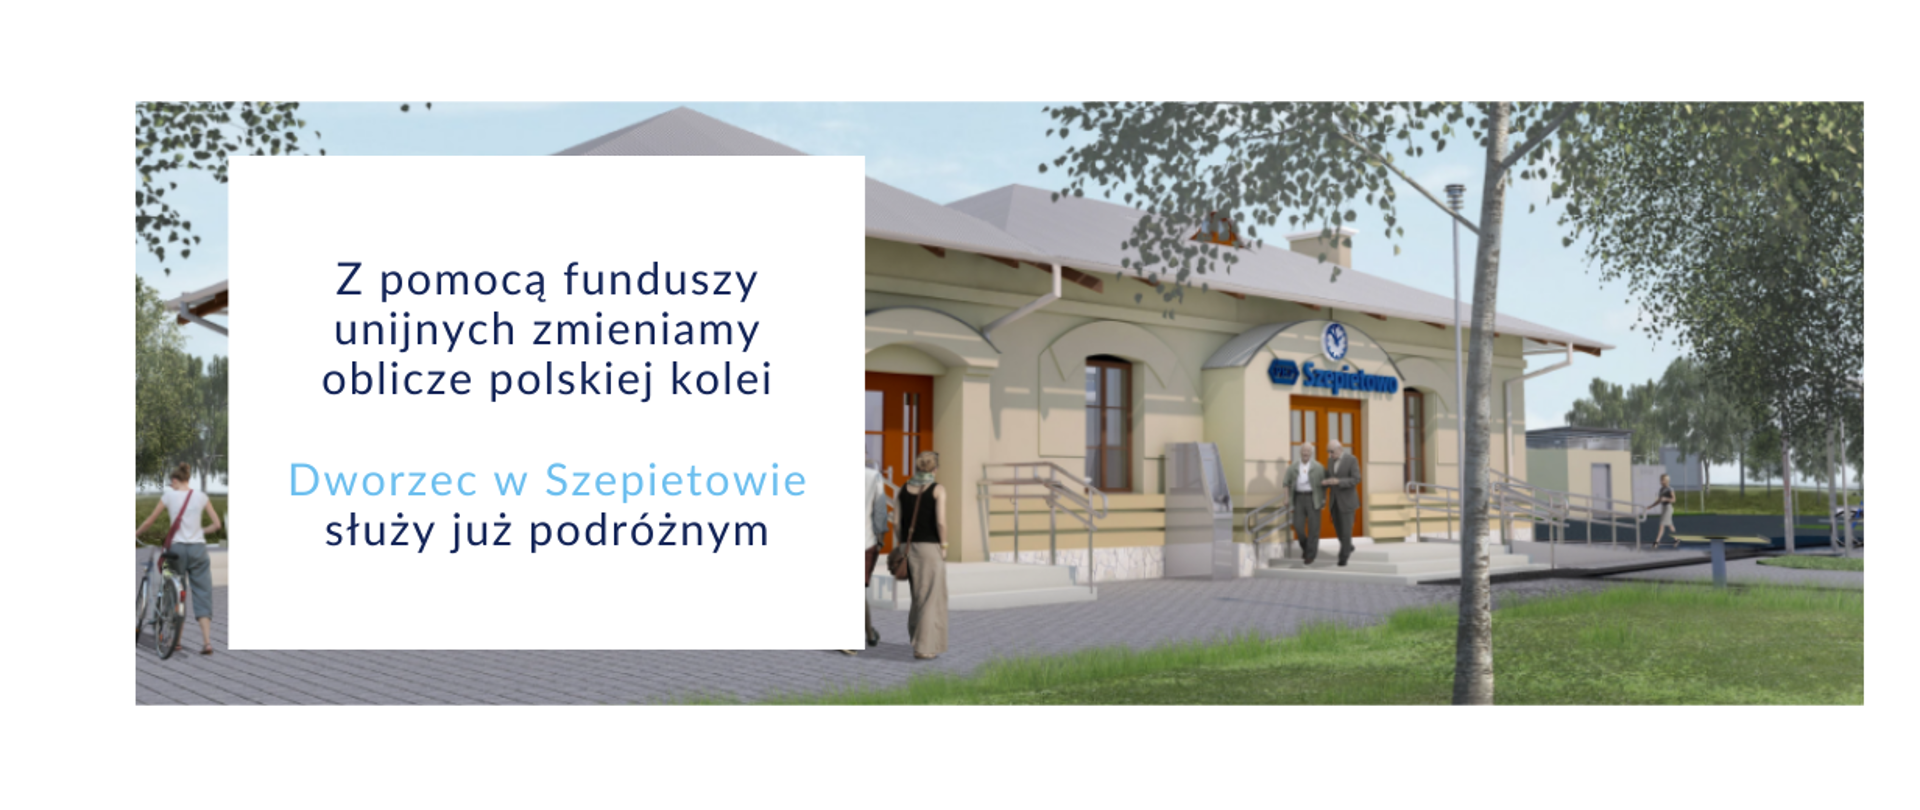 Wizualizacja dworca kolejowego w Szepietowie i napis: Z pomocą funduszy unijnych zmieniamy oblicze polskiej kolei/
Dworzec w Szepietowie służy już podróżnym